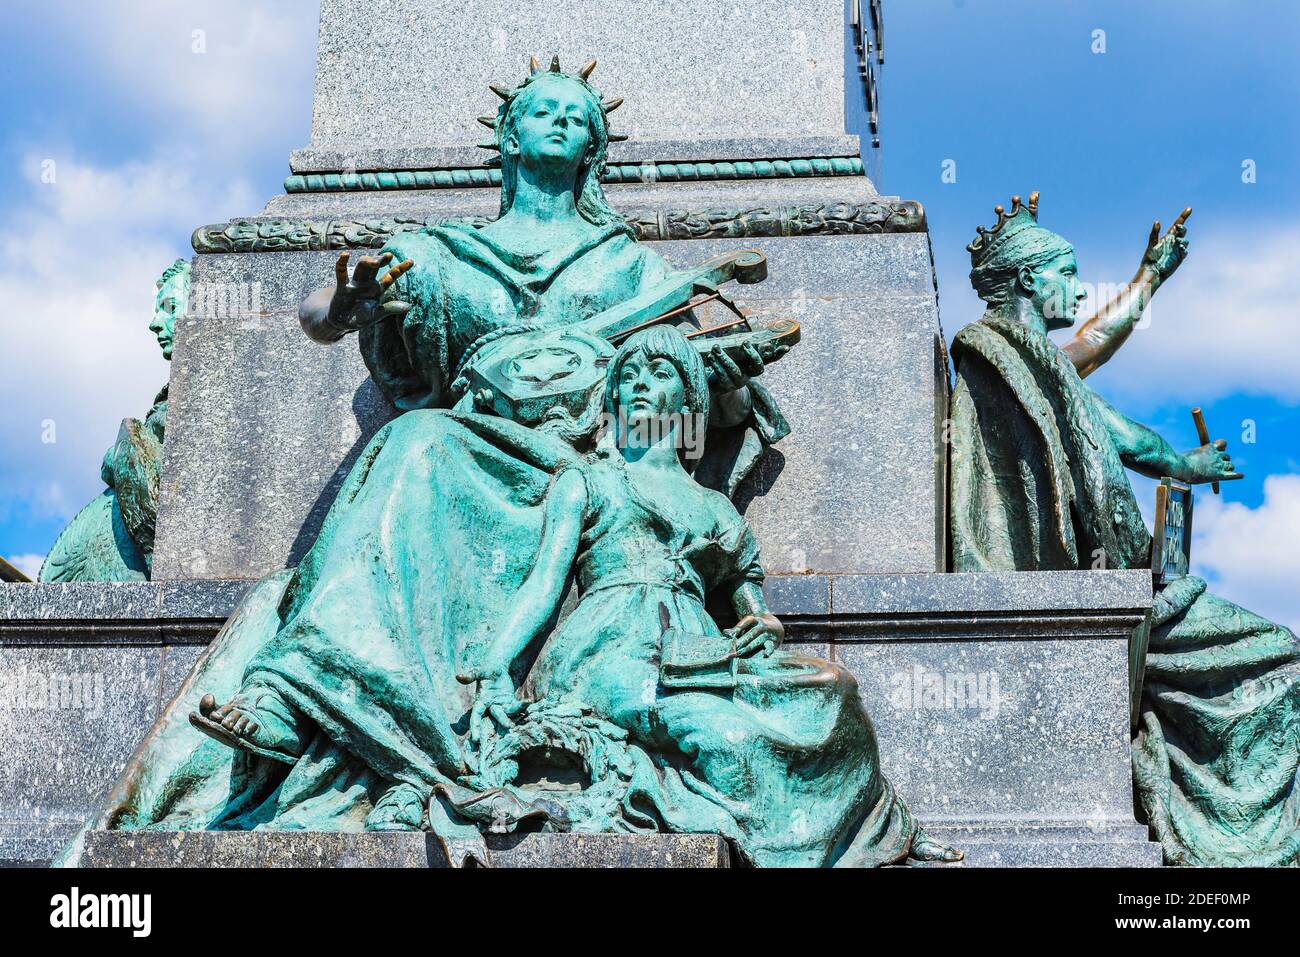 Muse de Poésie avec enfant, côté sud. Le monument Adam Mickiewicz de Cracovie est l'un des monuments de bronze les plus connus de Pologne, et une rencontre favorite Banque D'Images